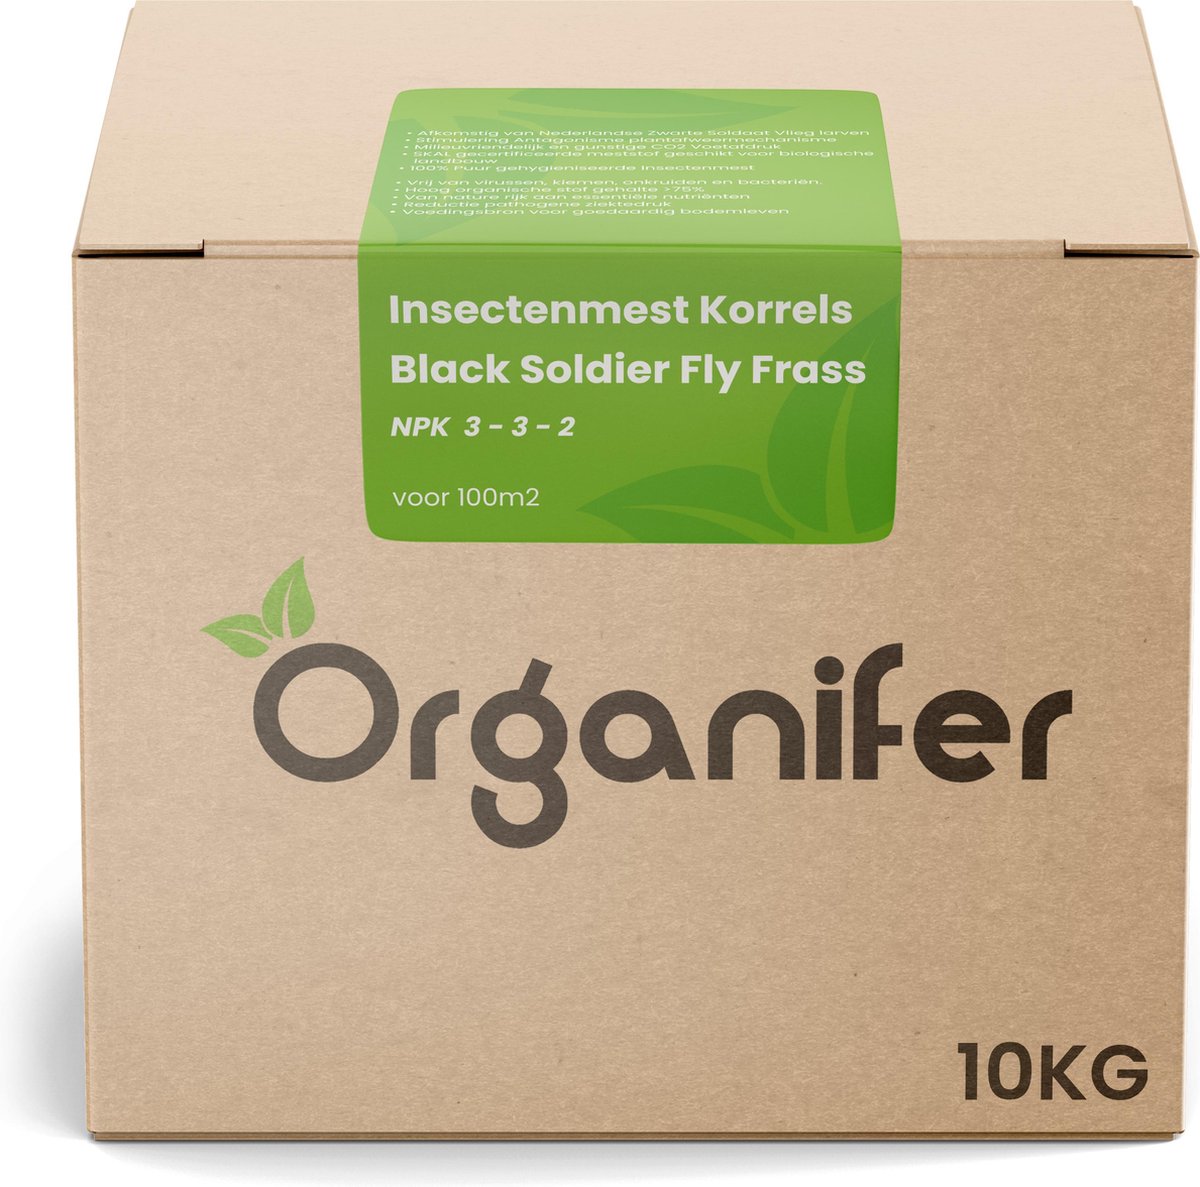 Insectenmest korrels - Black Soldier Fly Frass (10Kg voor 100m2) - Organifer